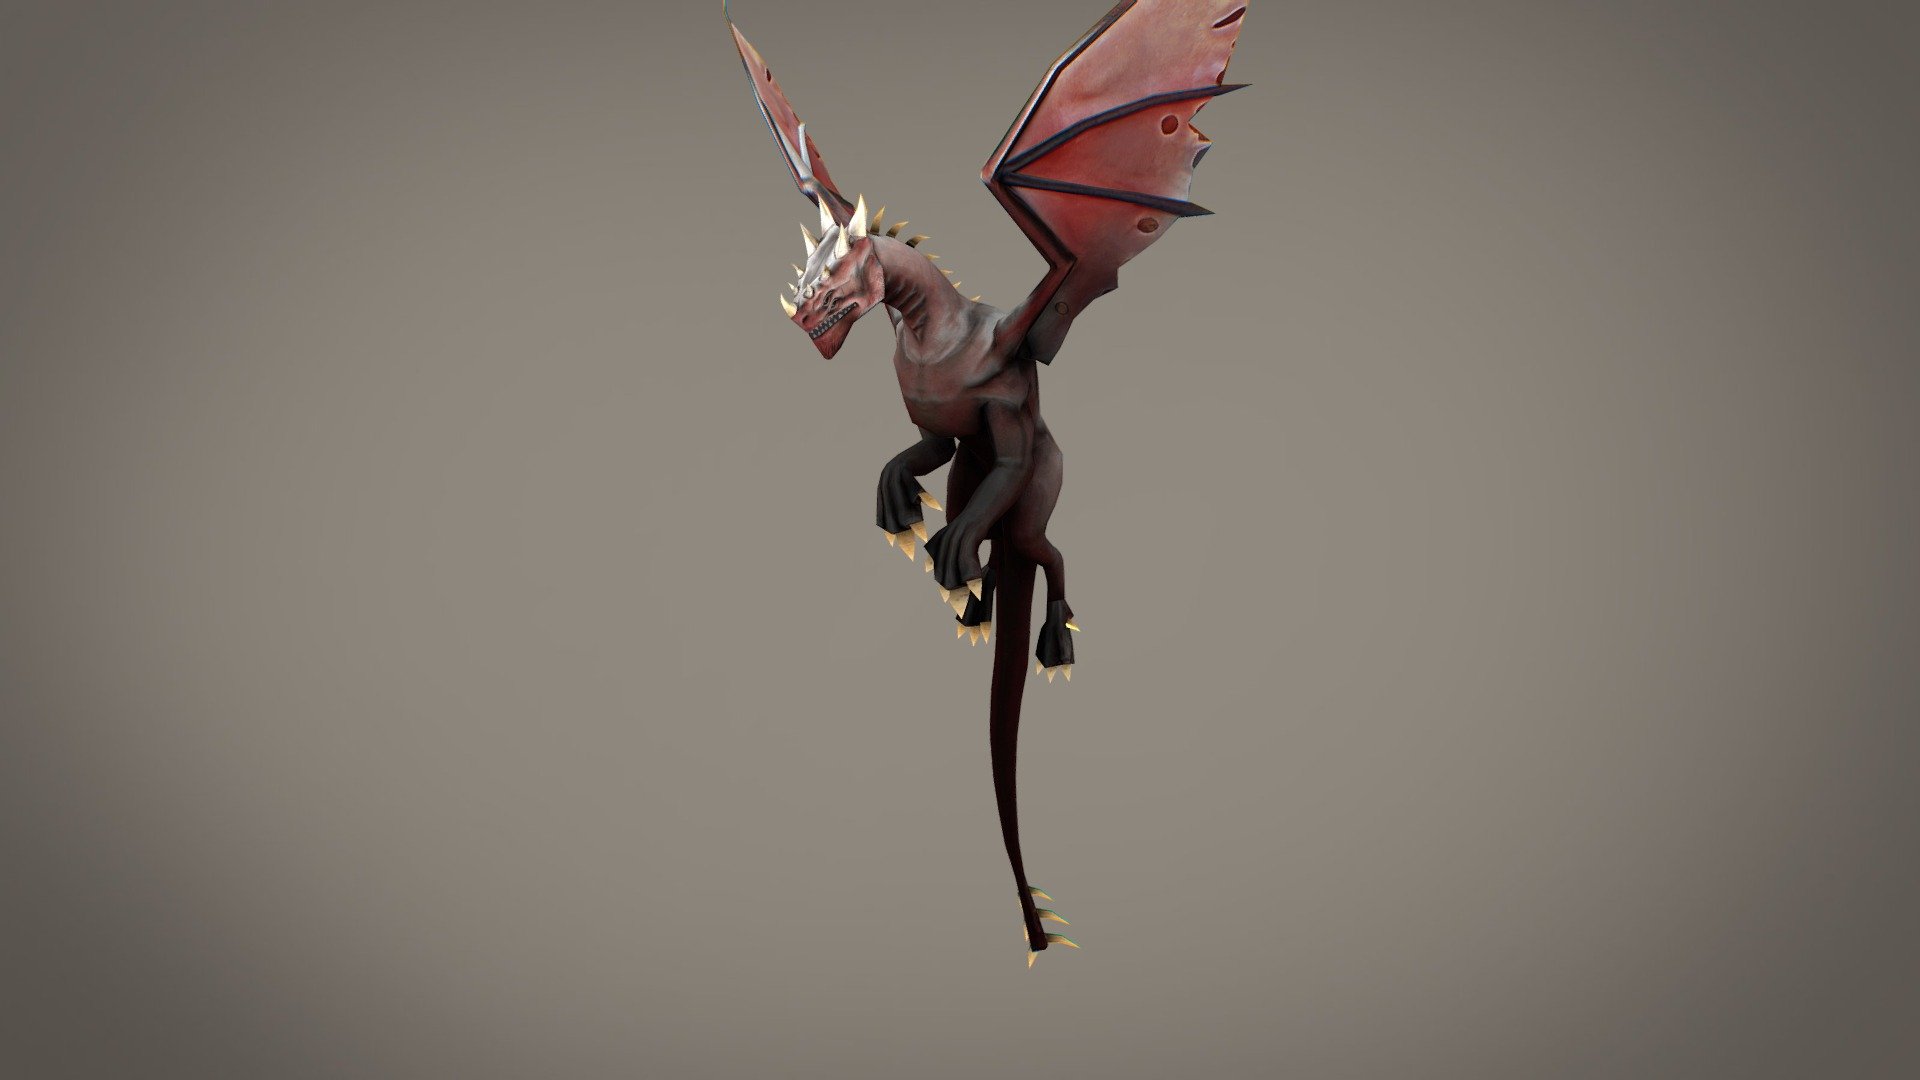 created by Asterman.co.il
https://asterman.co.il - Dragon fly - 3D model by ikreinin (@kreinin) 3d model